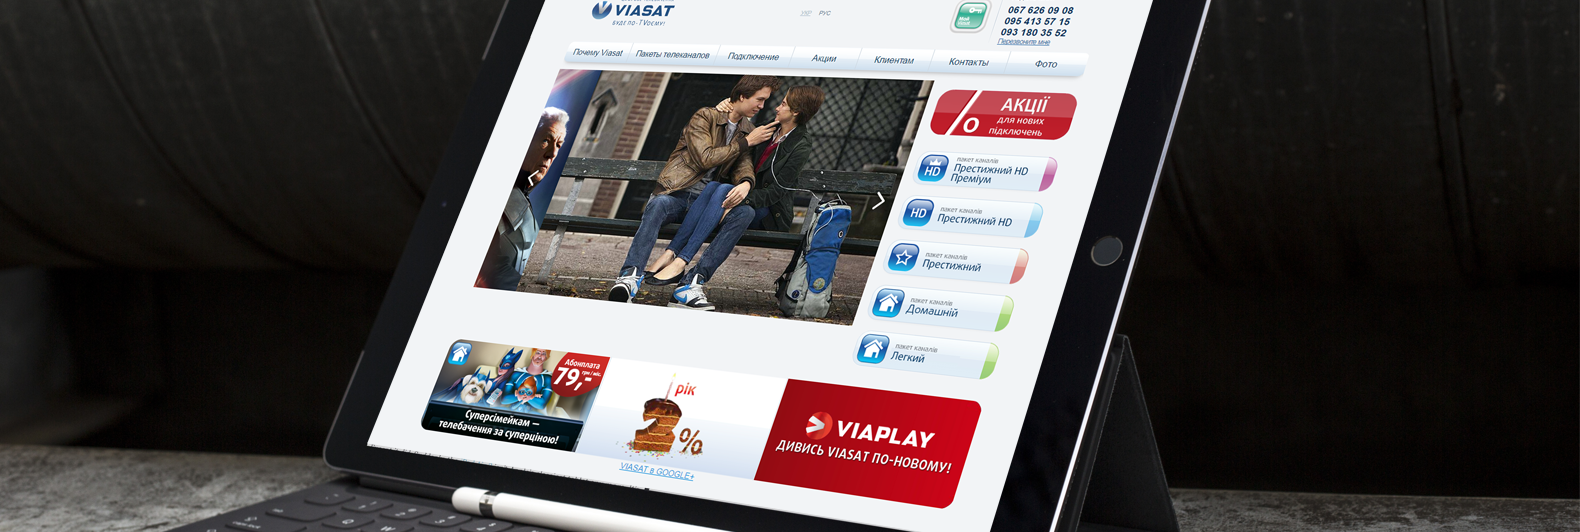 viasat-tv(iPad)(1600x900)